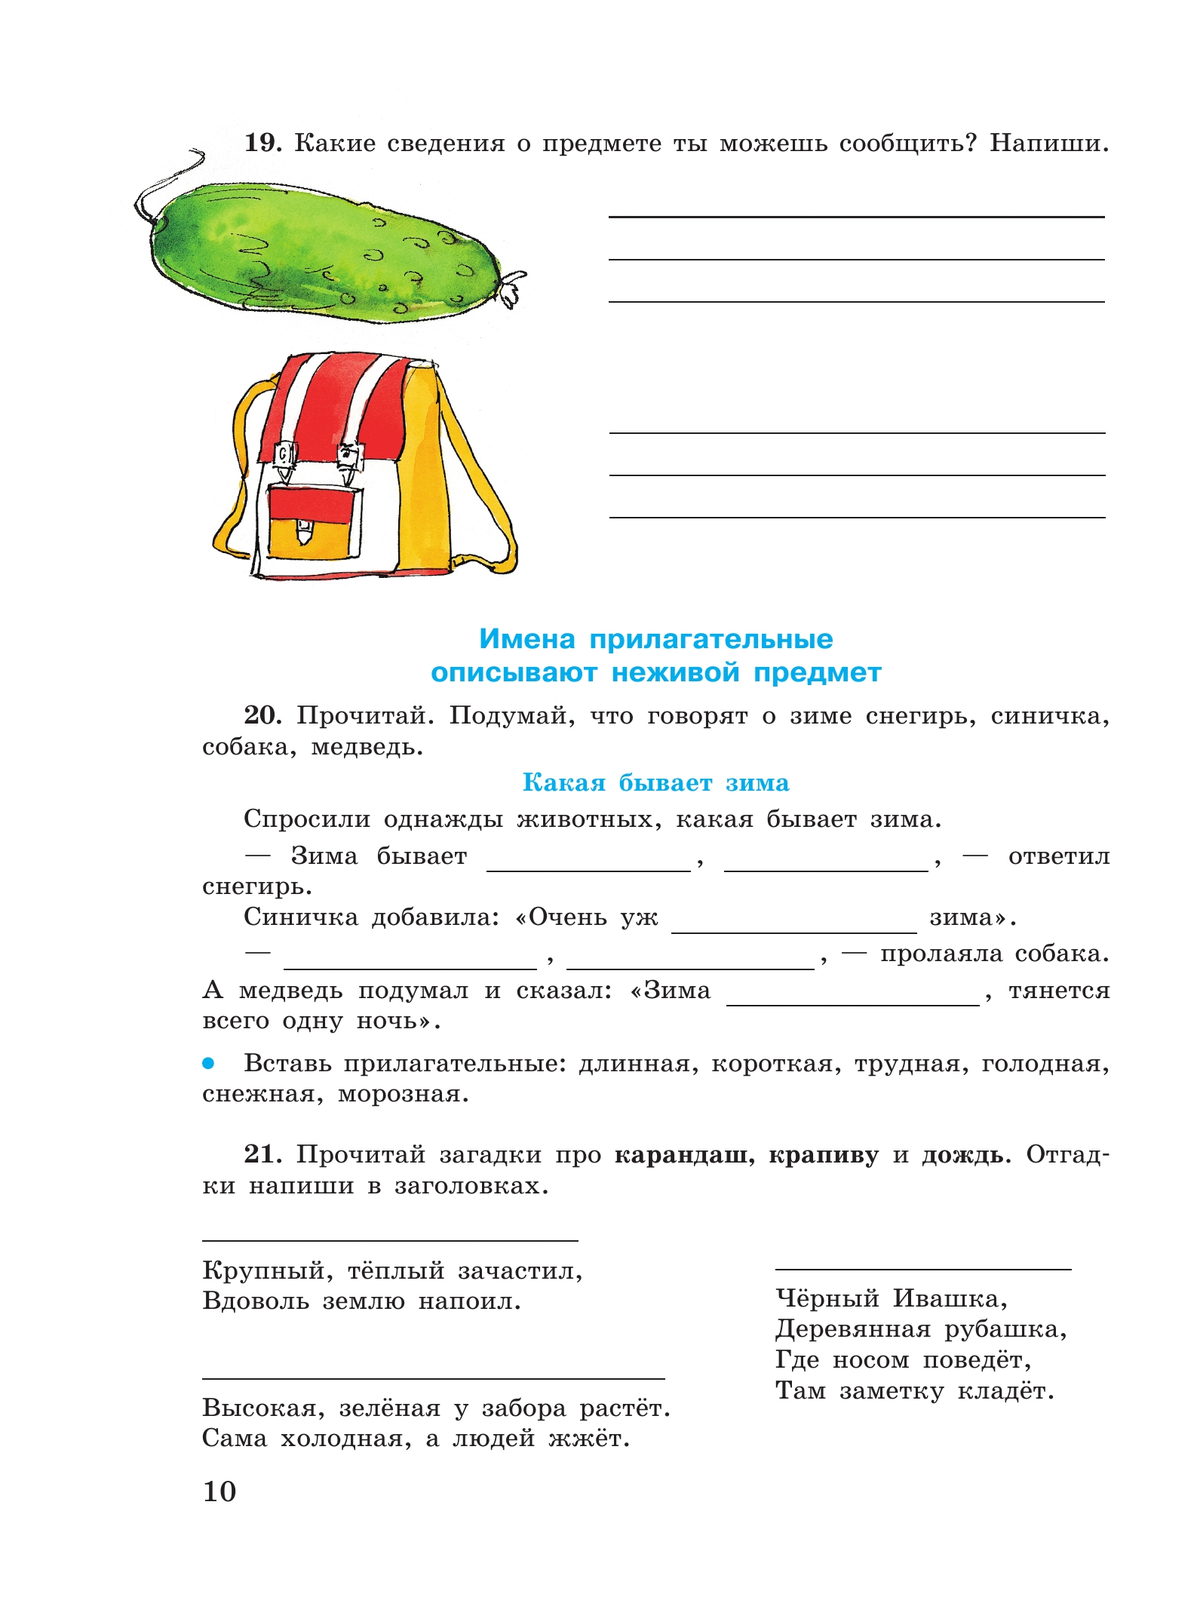 Русский язык. Имя прилагательное. 5-9 классы. Рабочая тетрадь 3 (для обучающихся с интеллектуальными нарушениями) 7